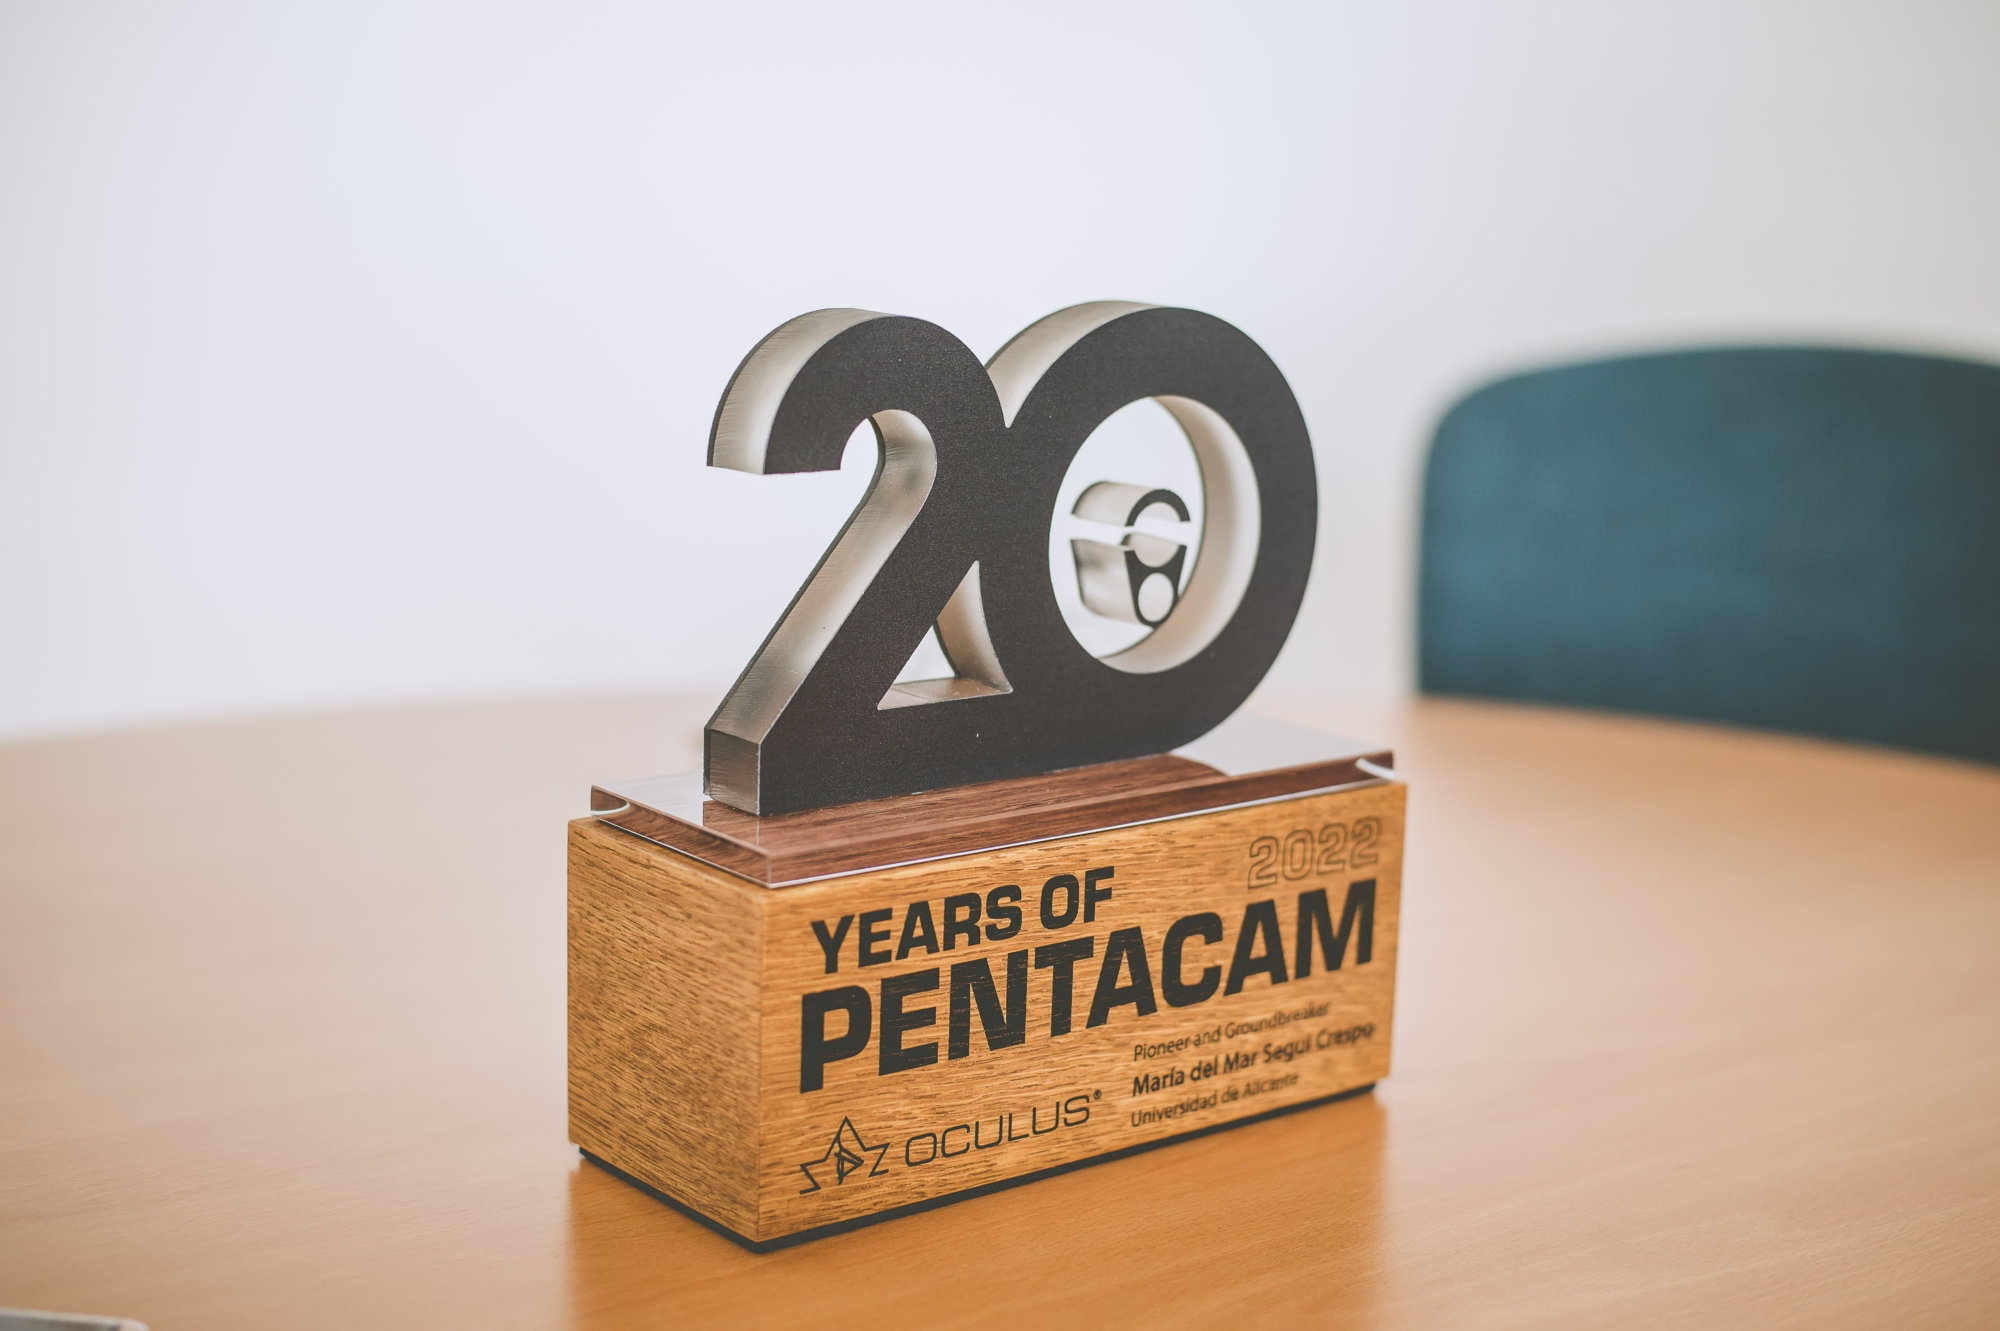 The 20th Anniversary Pentacam® Trophy of María del Mar Seguí Crespo